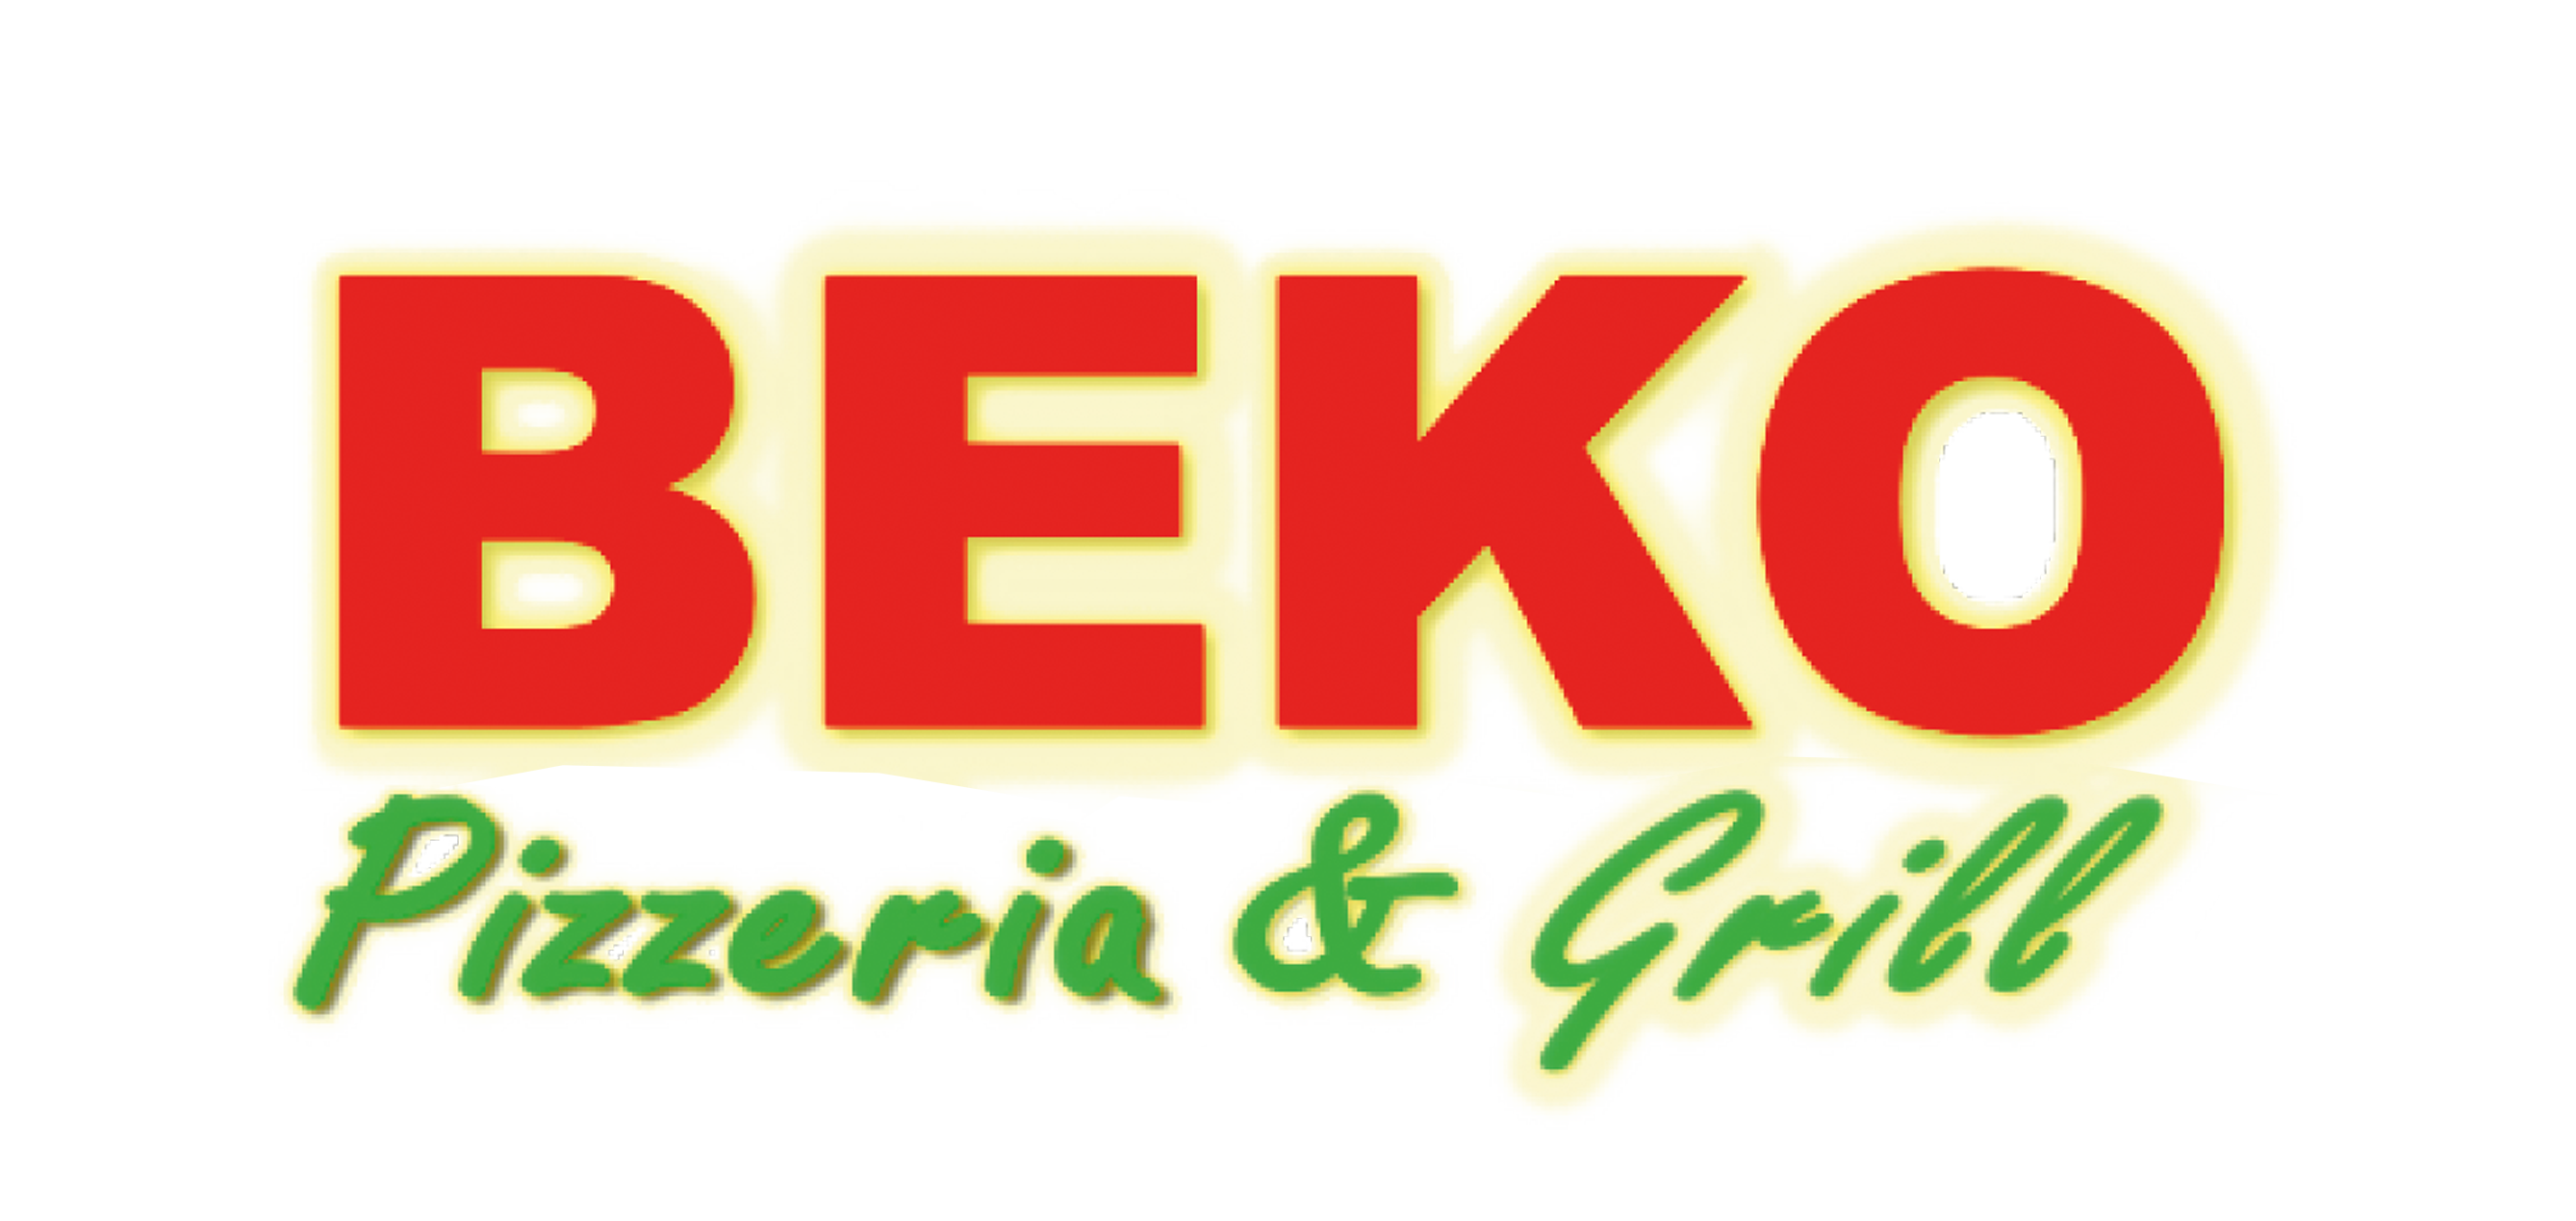 BEKO Pizzeria & Grill